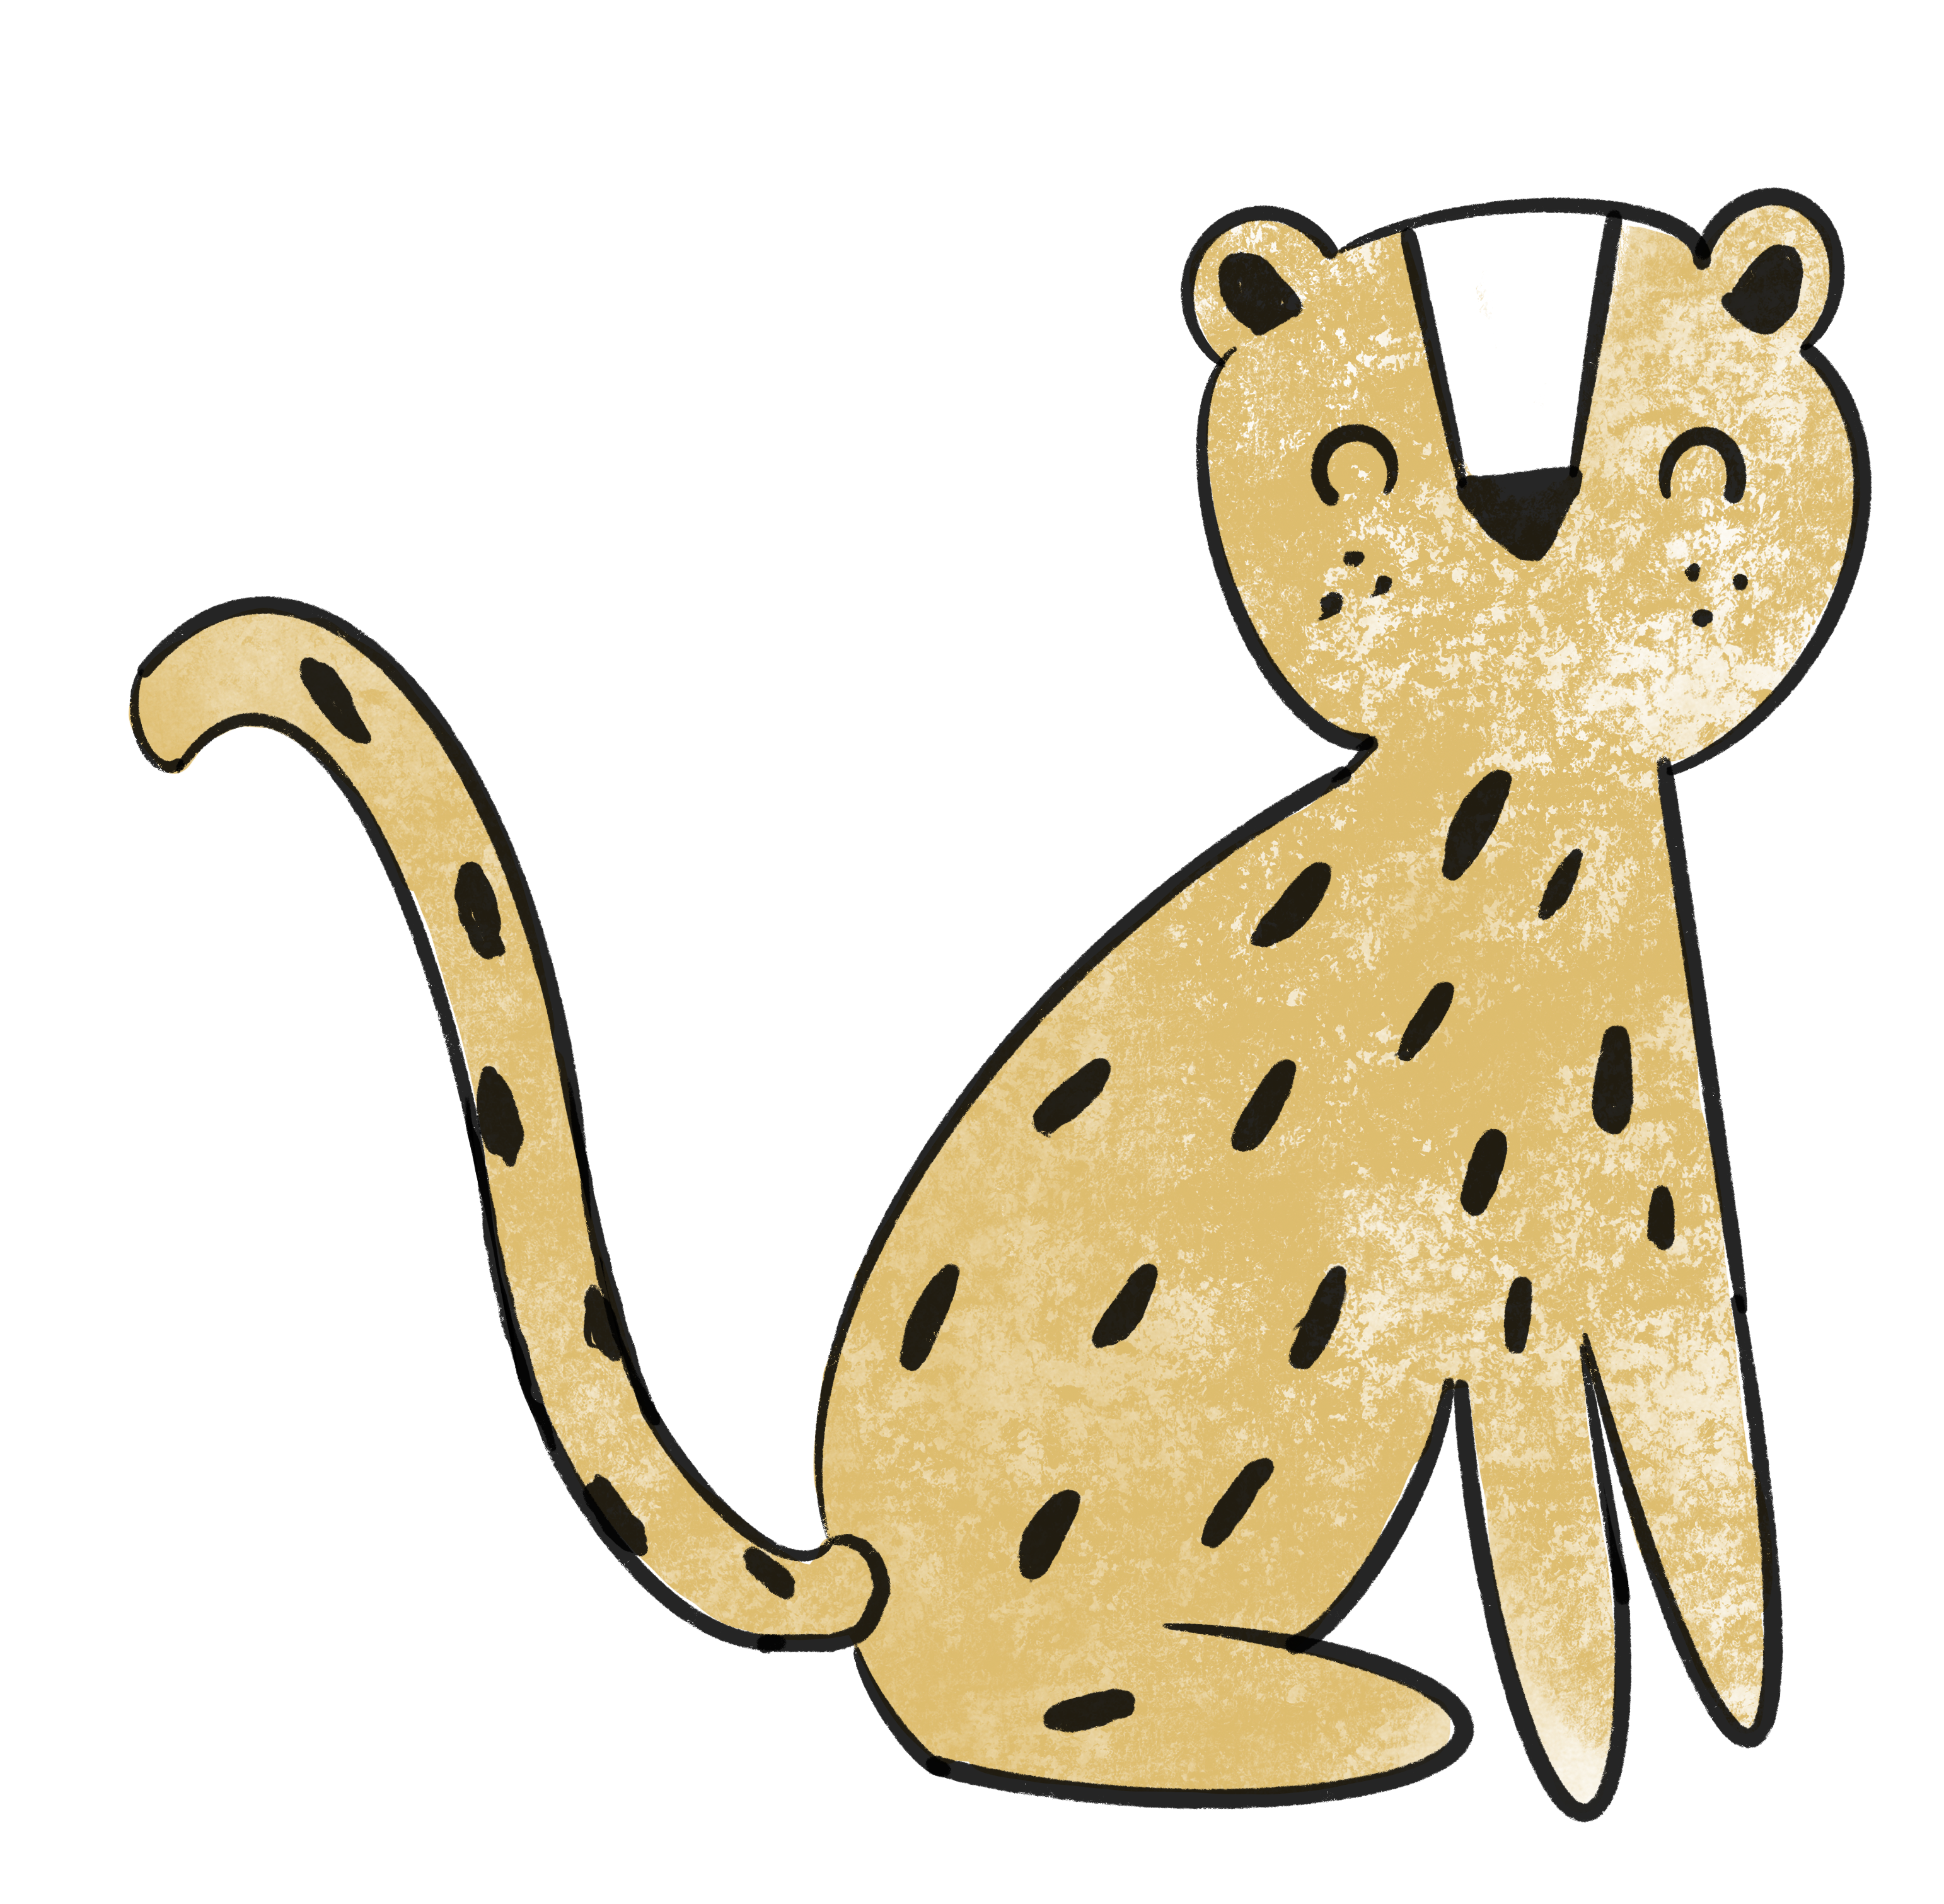 Bügelbild Leotierchen seitlich Leo Leopard Kollektion Little Animal ca. 14,5 x 13,5 cm BxH